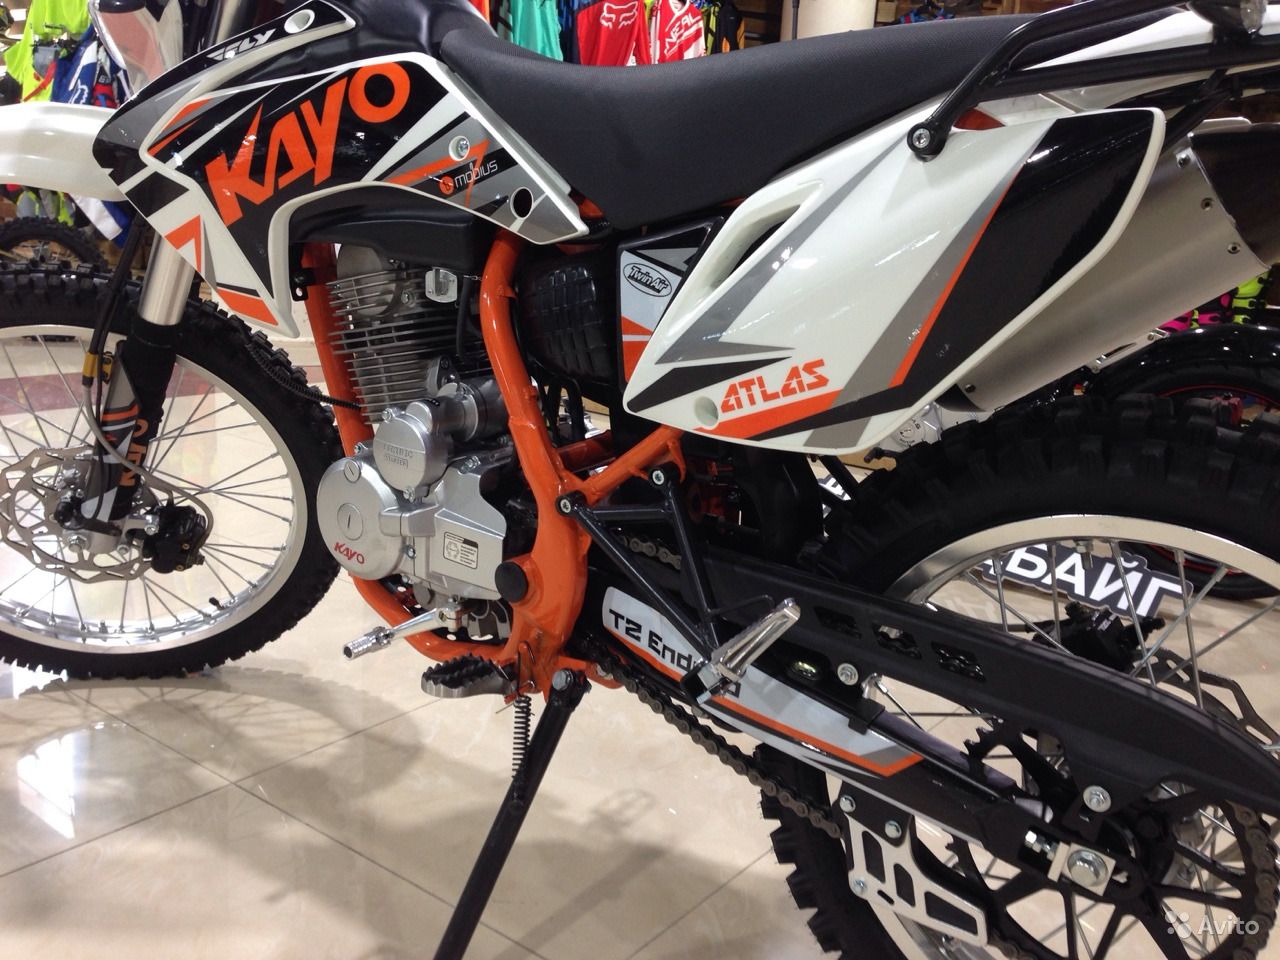 Кроссовый мотоцикл Kayo T6 - выбор тех, кто любит просторы и бездорожье